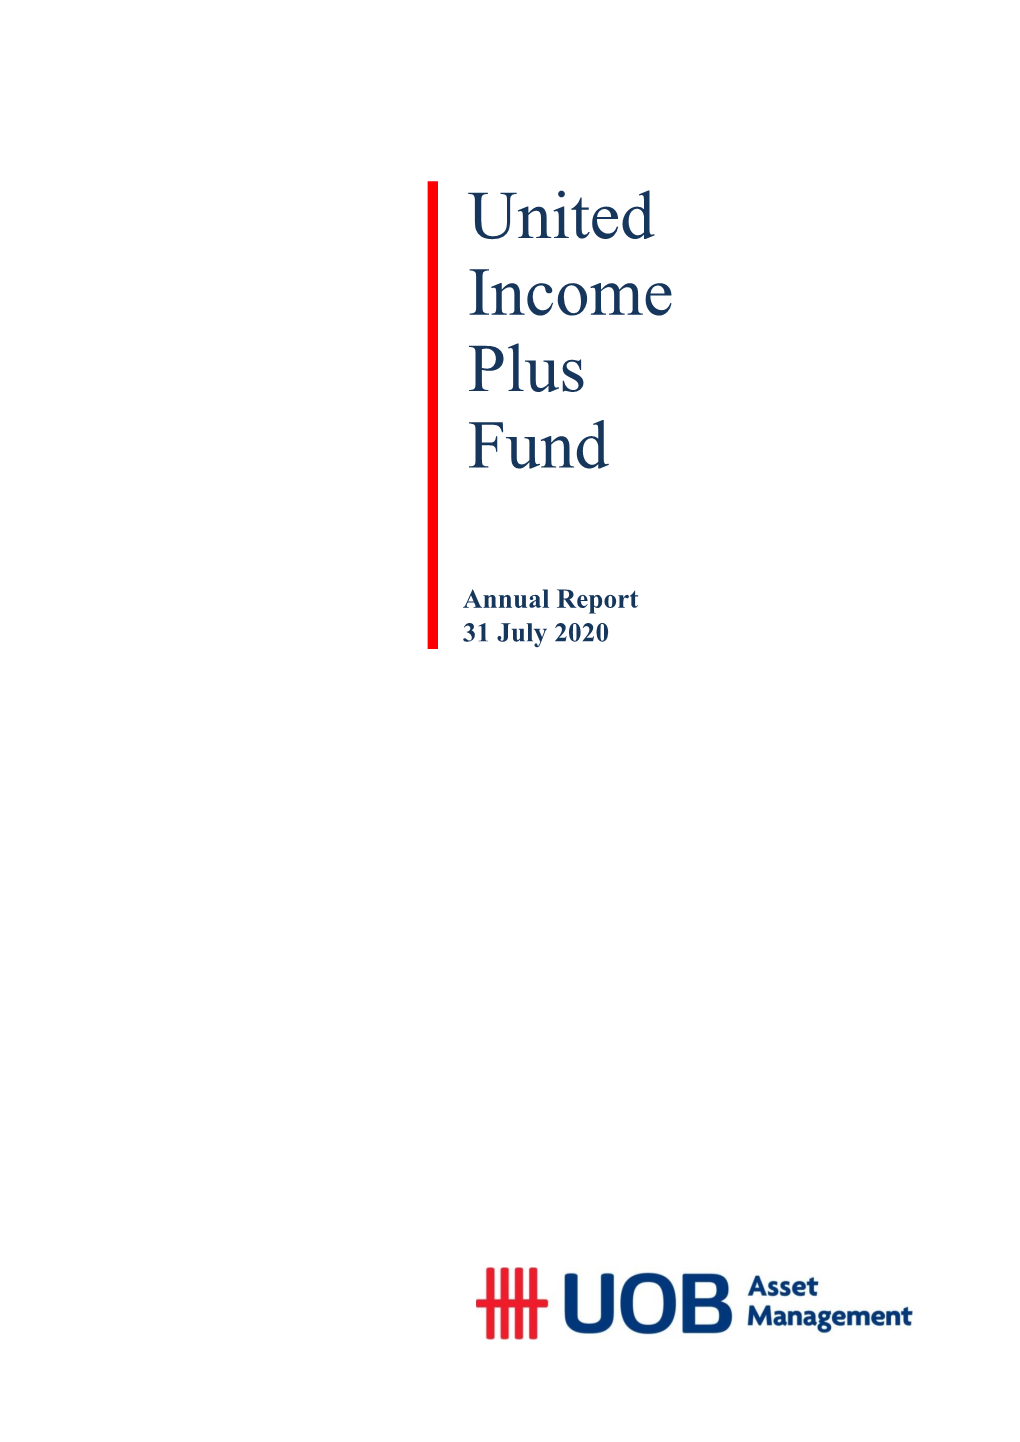 United Income Plus Fund